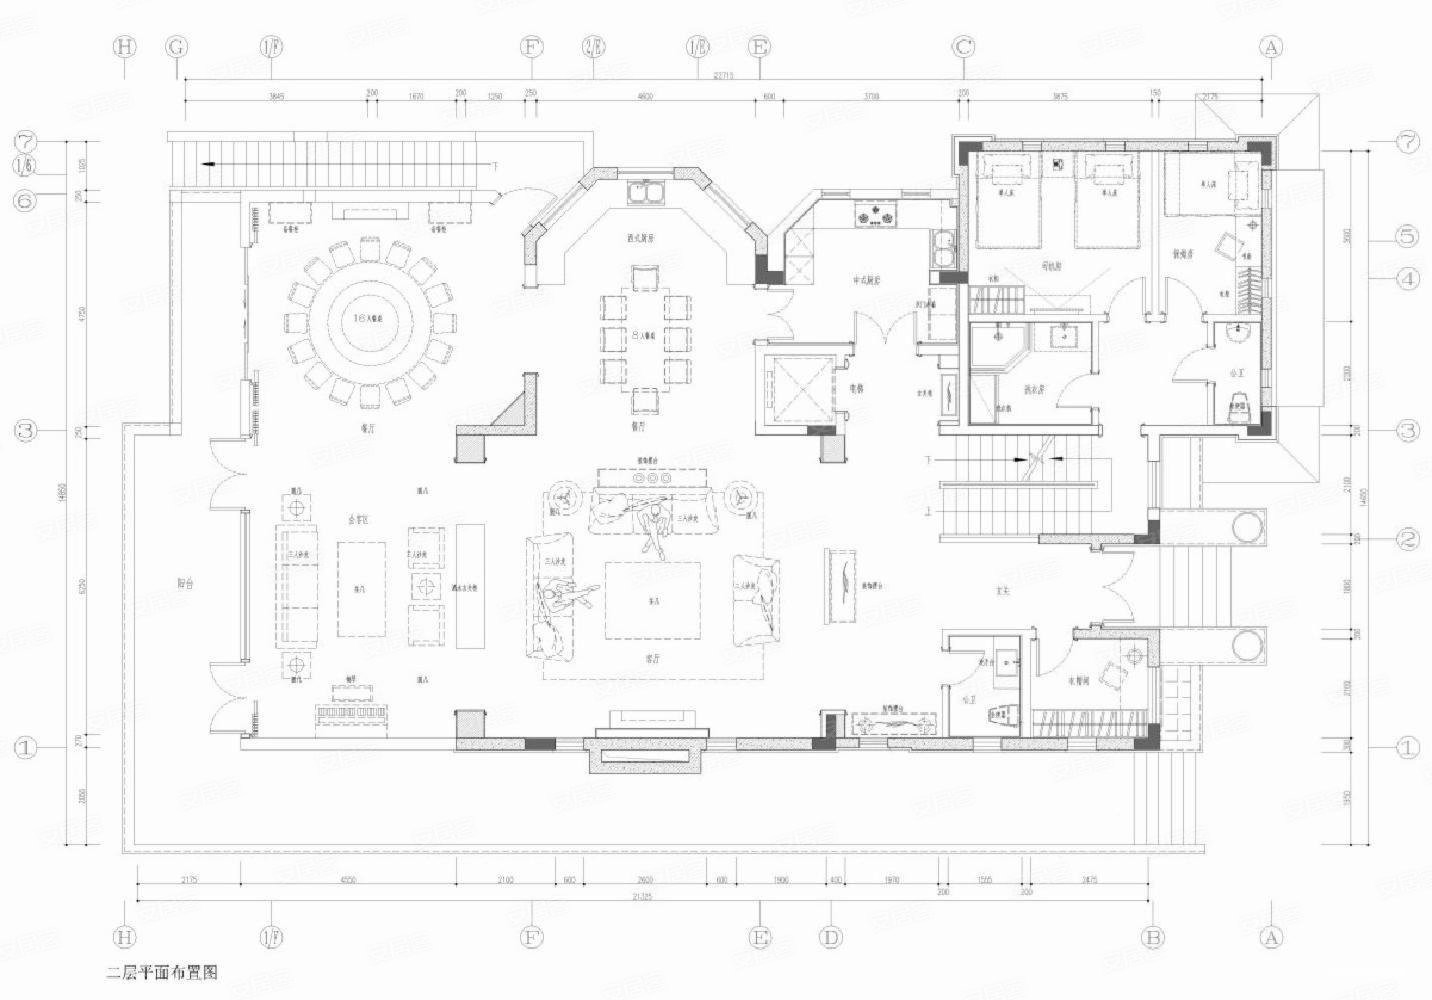 430新古典别墅装修效果图,南湖半山豪庭|恒久之美装修案例效果图-美广网(图1)